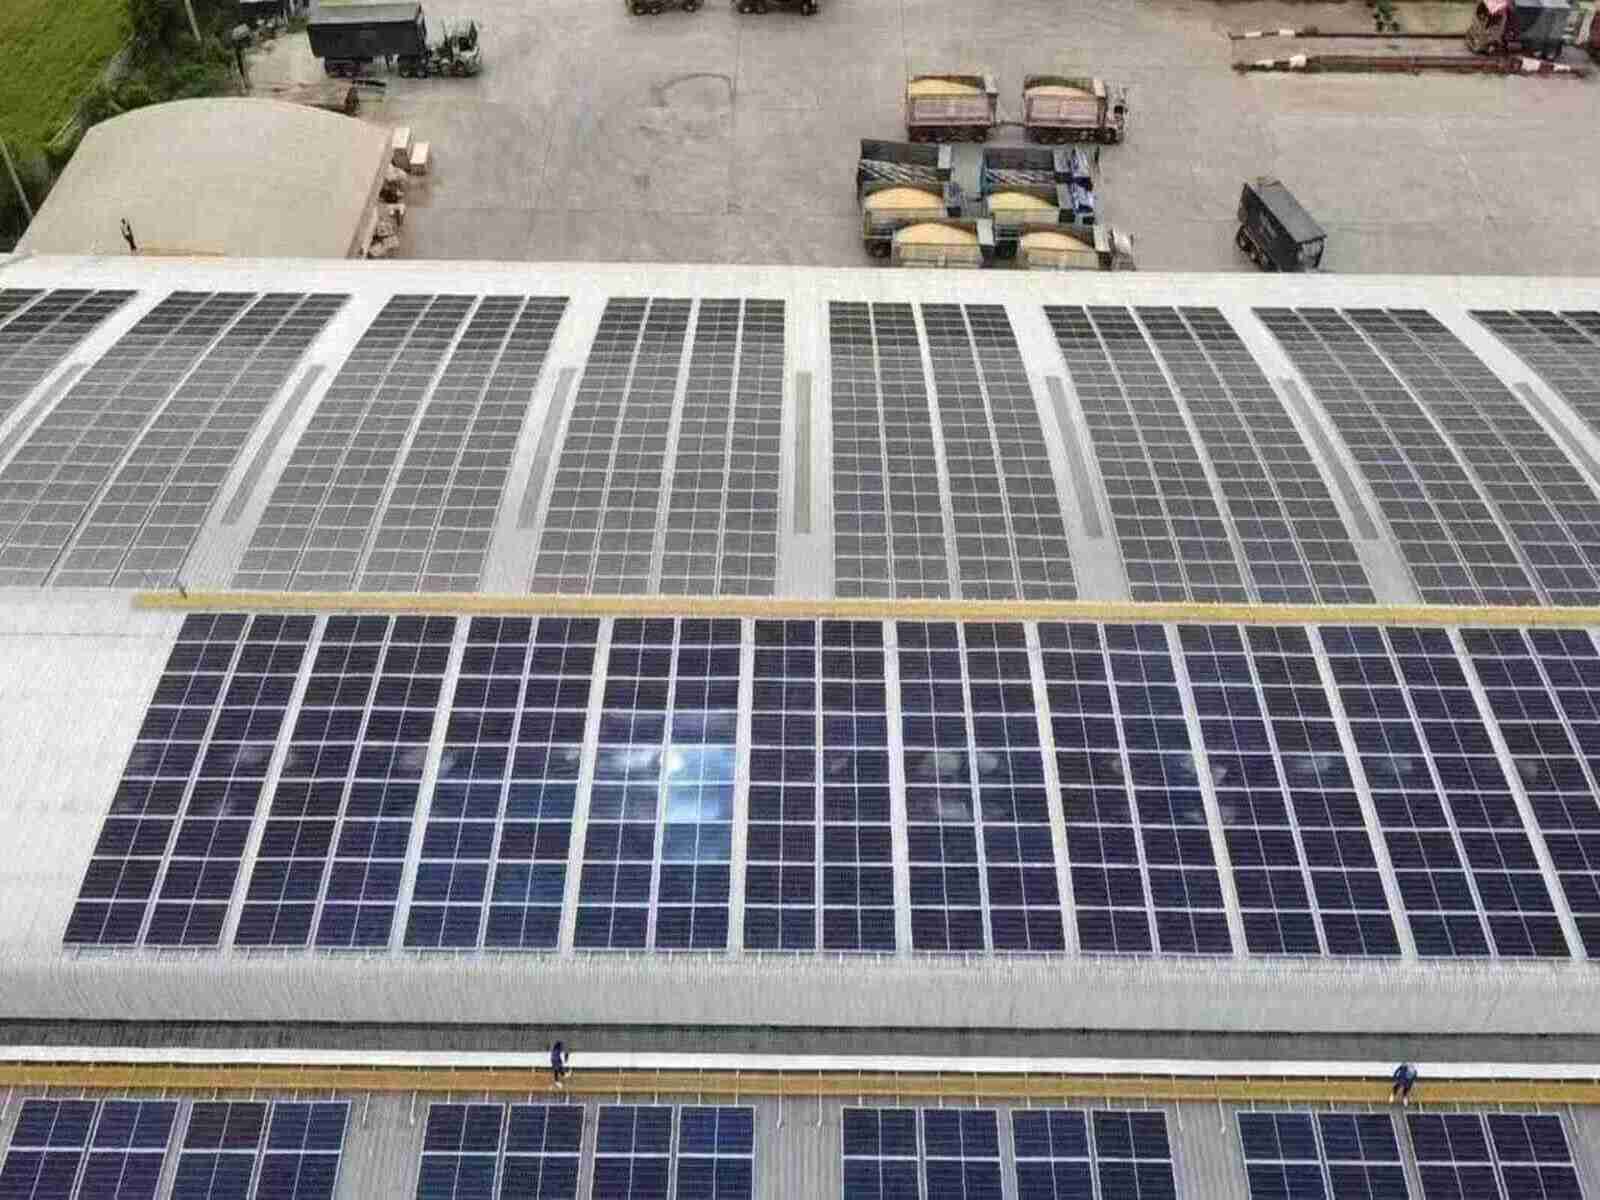 حديقة سانت ماري بورن الشمسية: تم تقديم خطط لتشغيل 7200 منزل